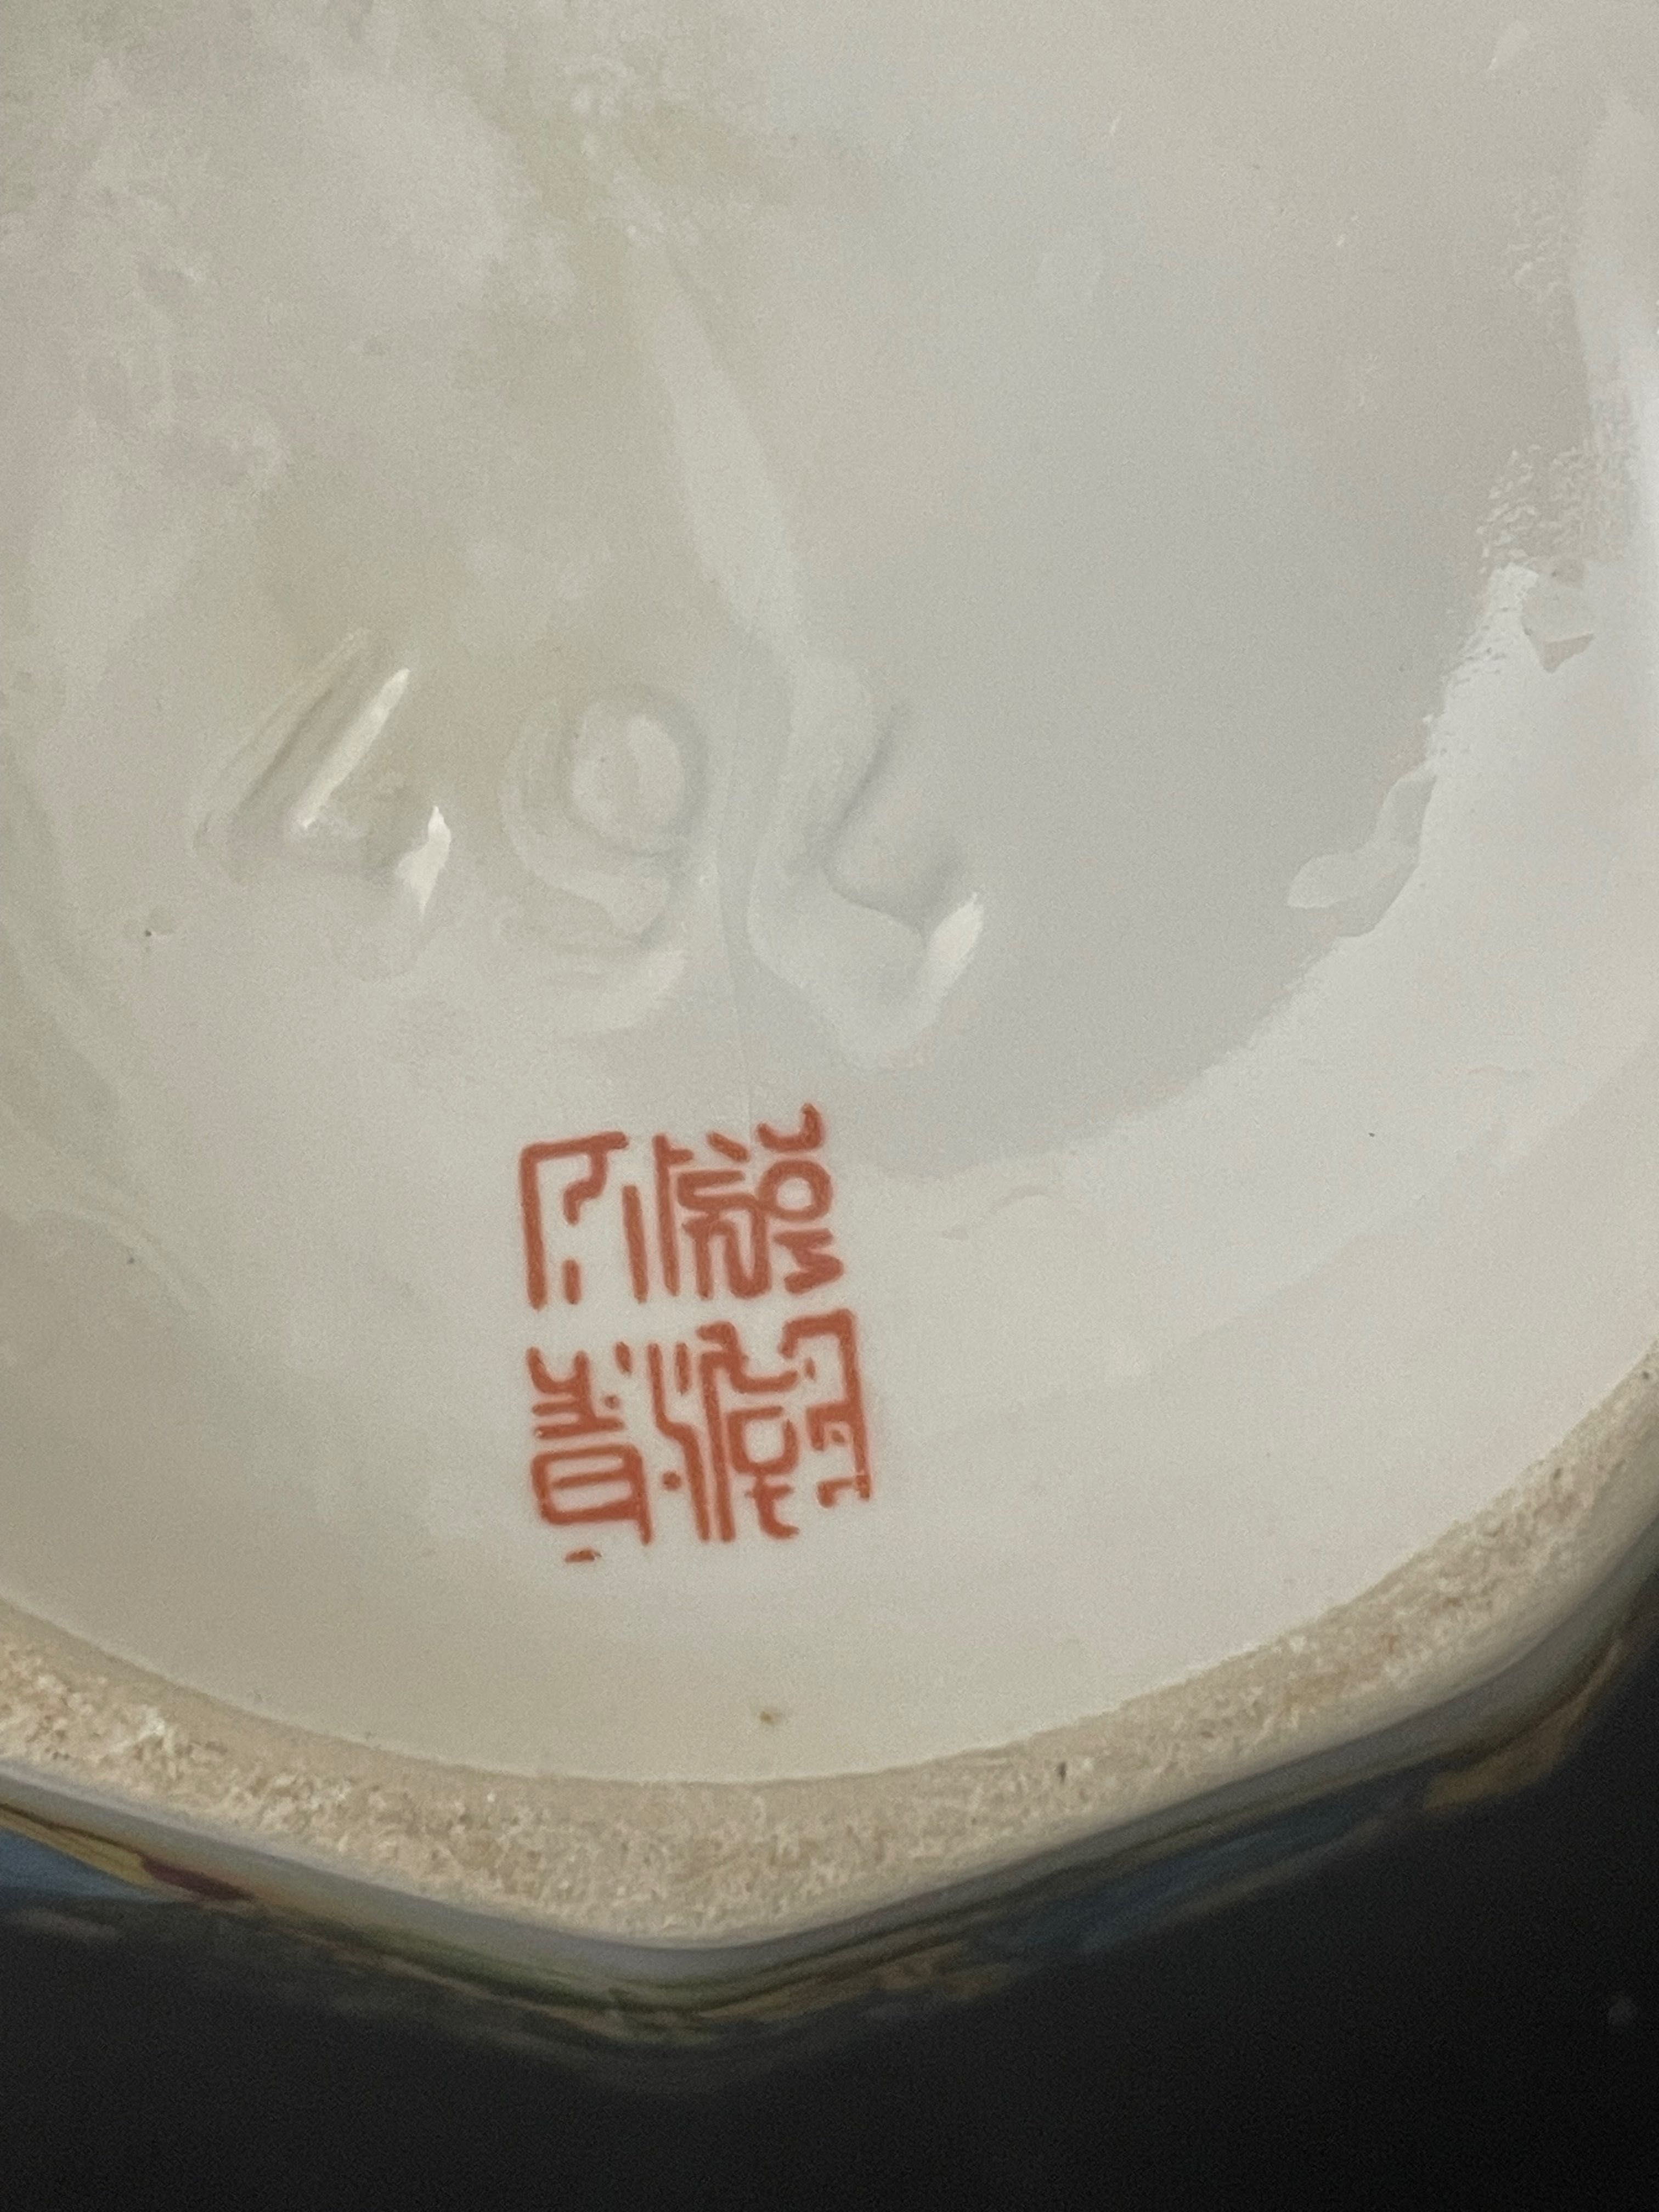 Порцеланова китайская  ваза с калиграфия